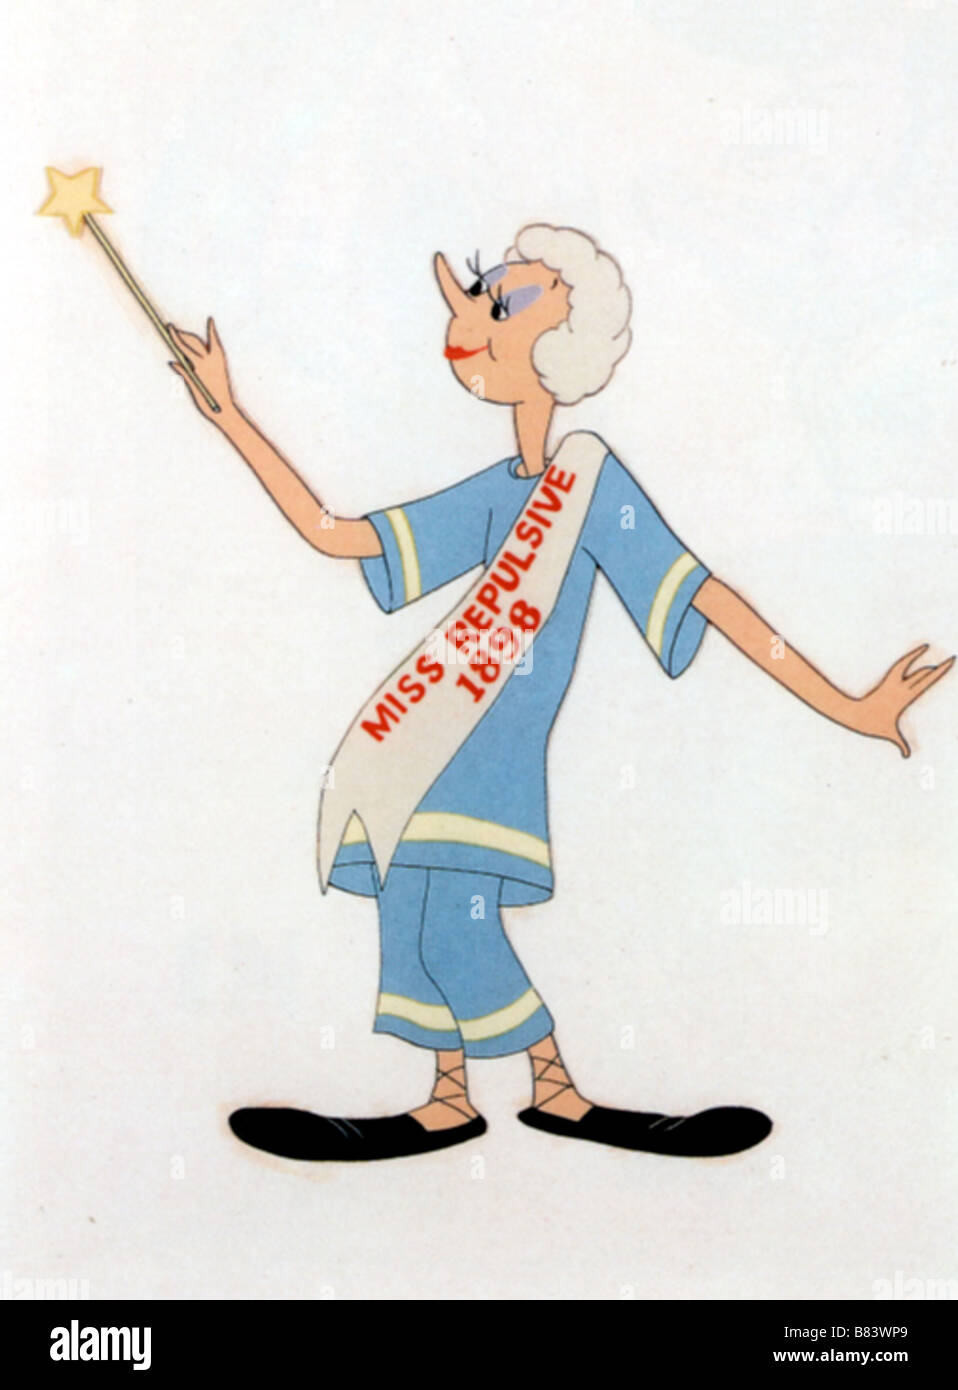 Cambio de Swing Swing Cenicienta Cenicienta Cambio Año: 1945 - EE.UU. Director de animación: Tex Avery. Foto de stock